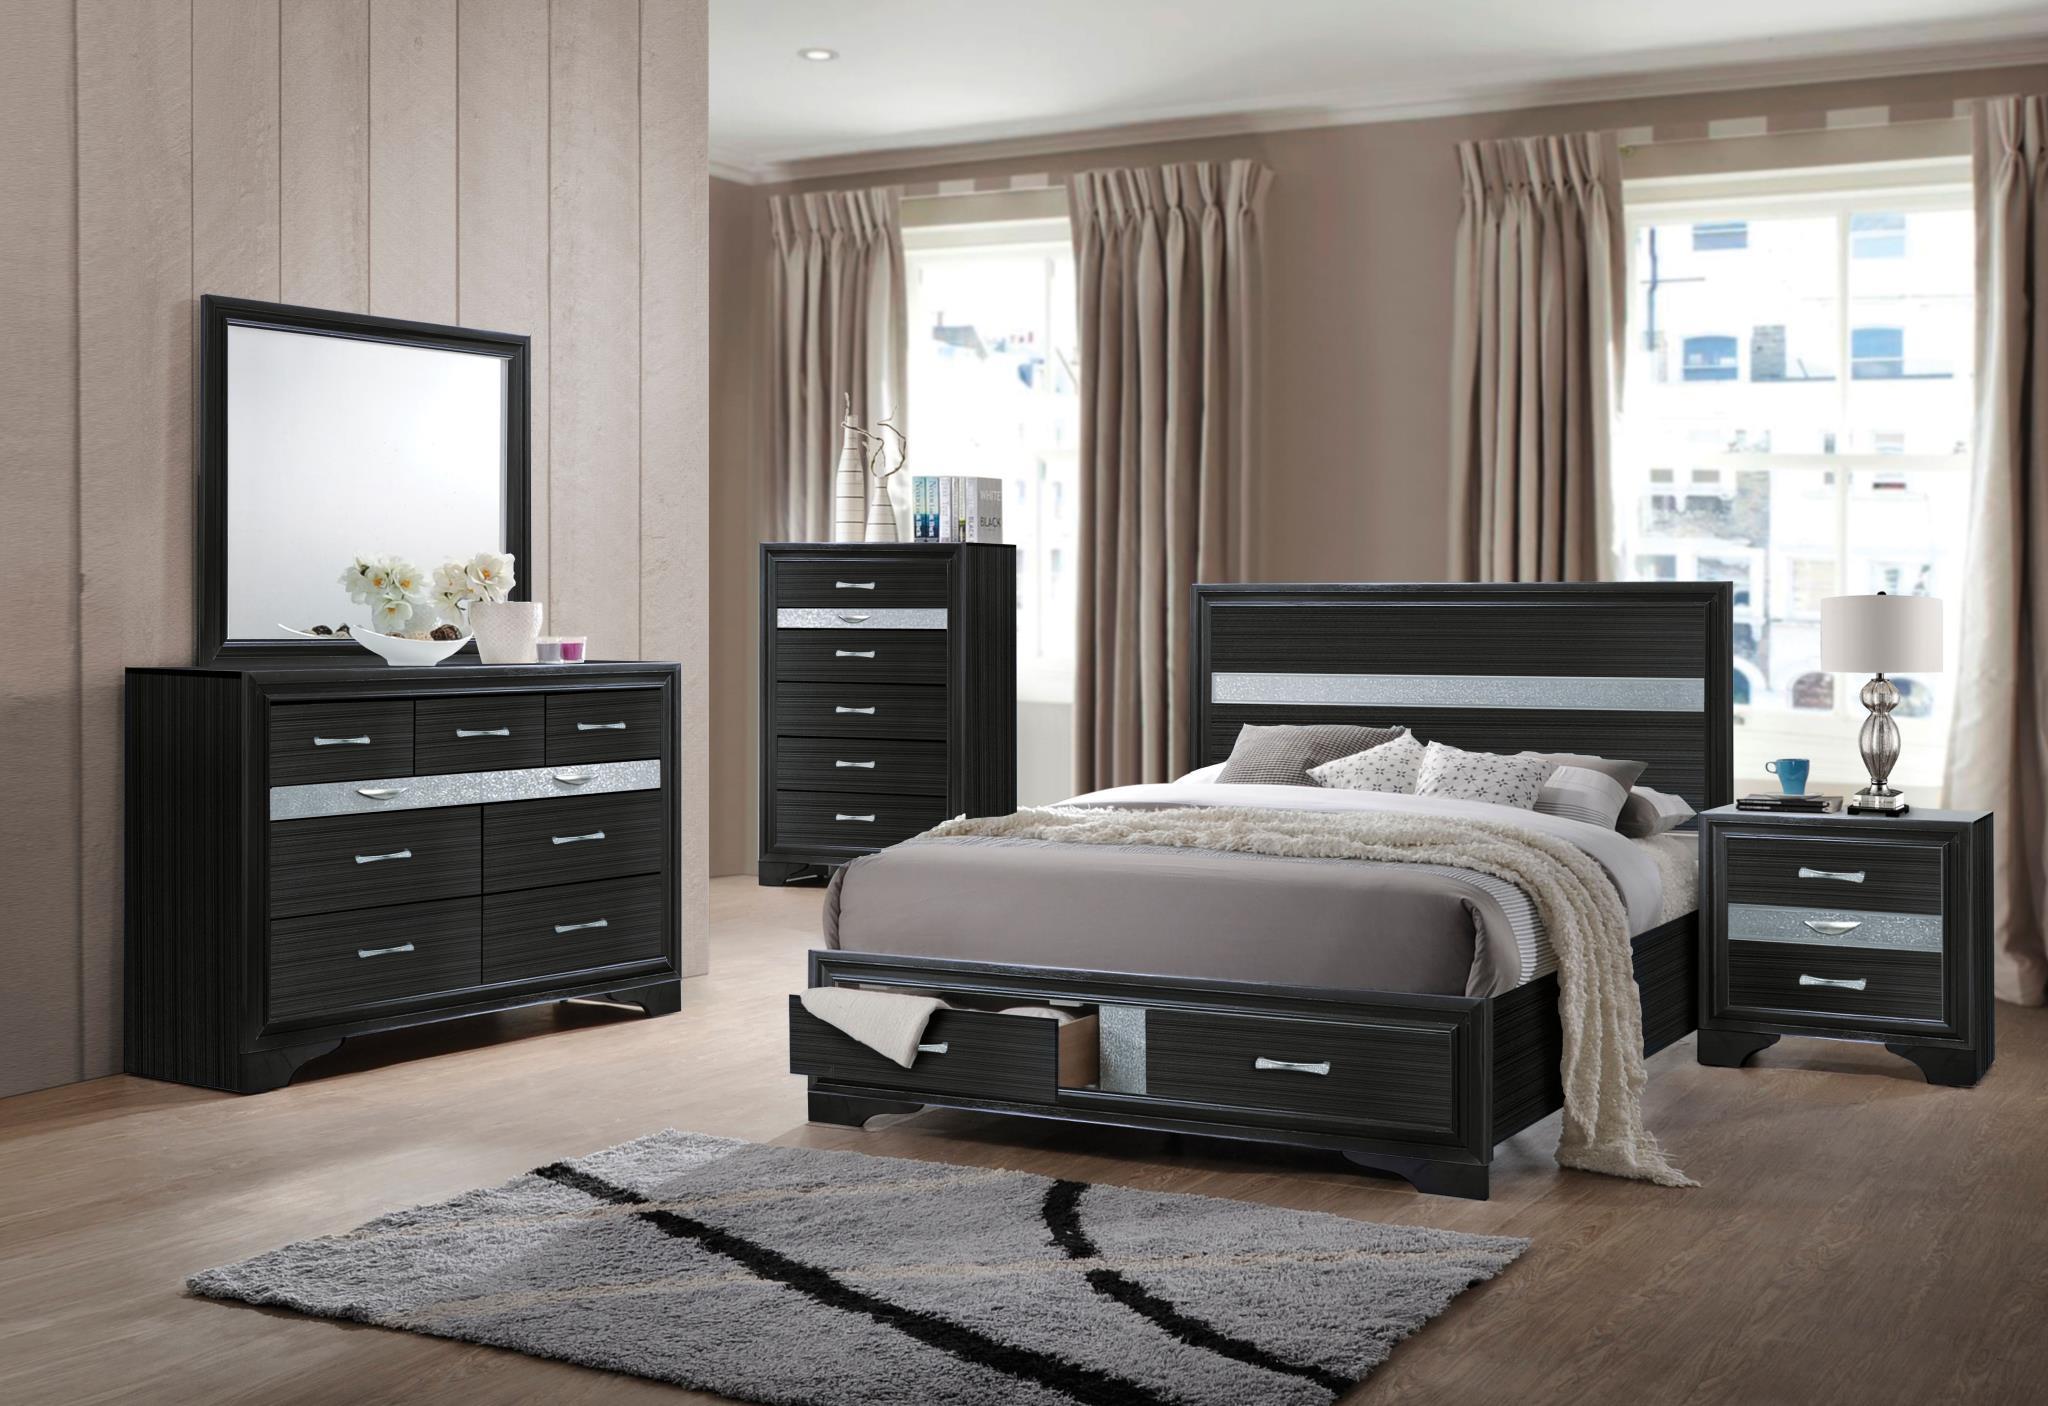 

    
25897EK Acme Furniture Storage Bed
